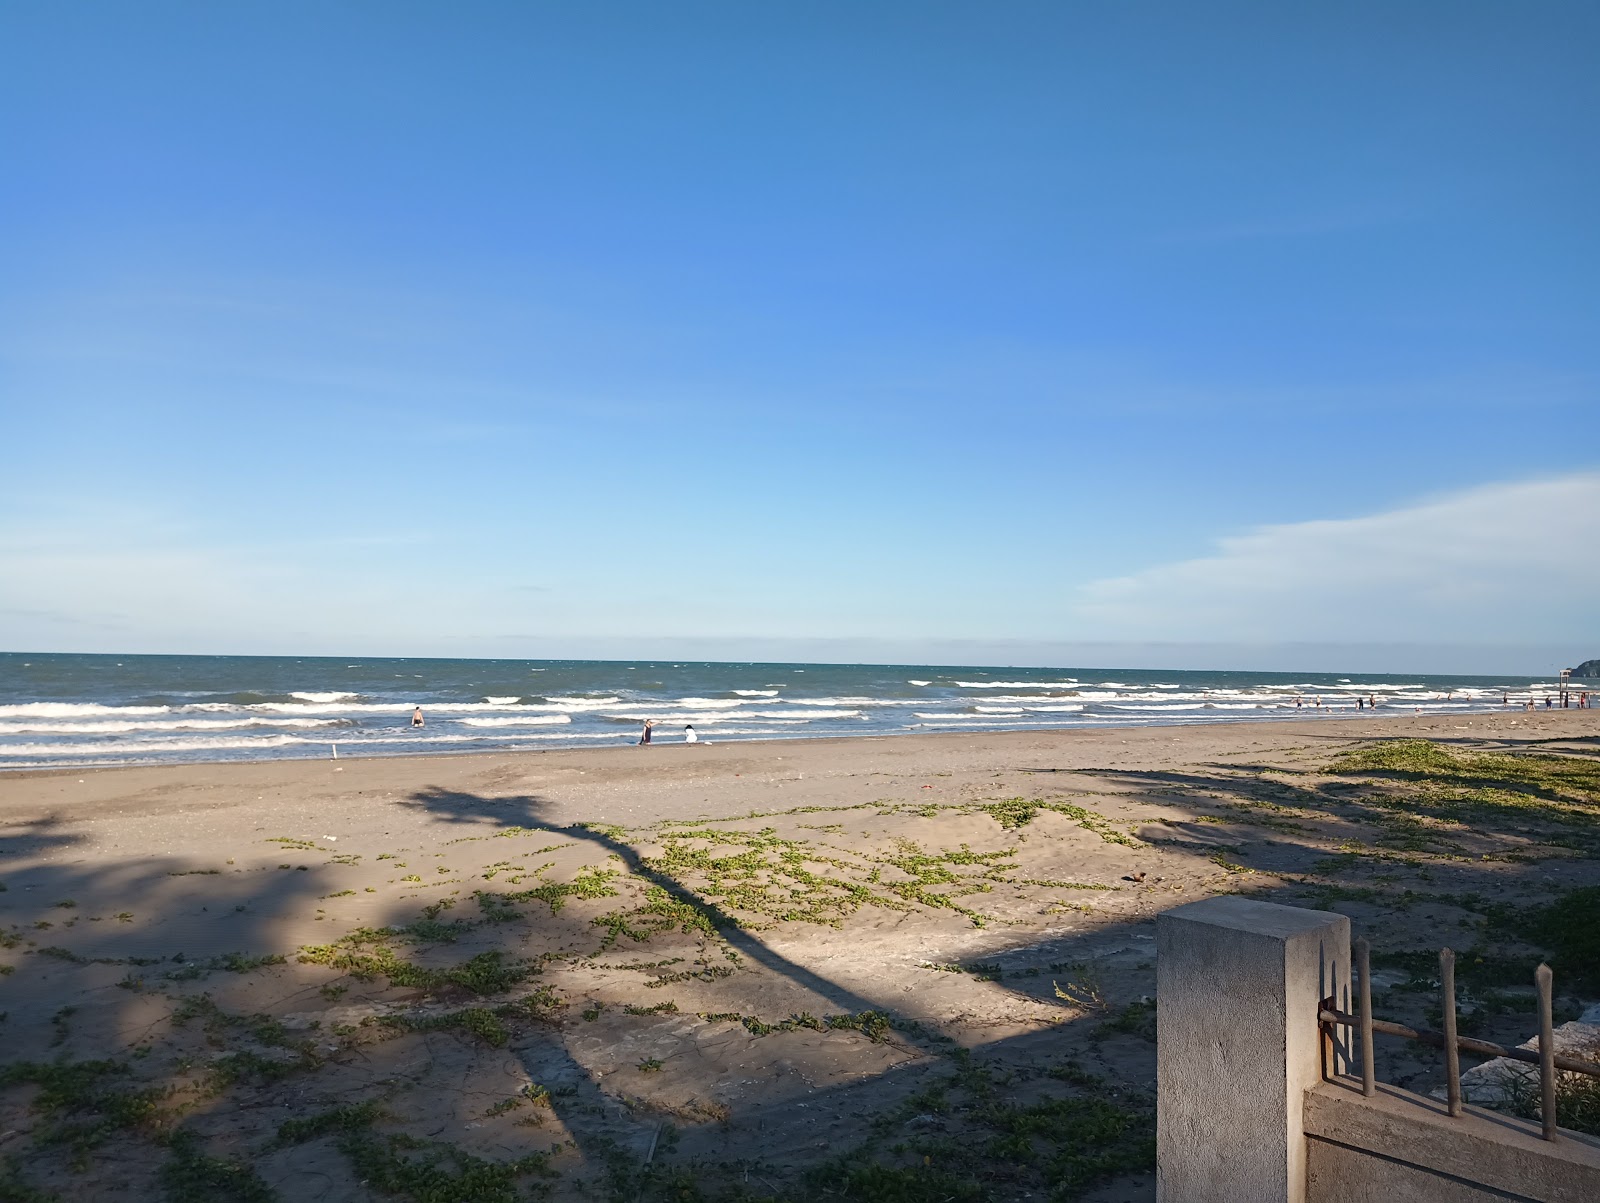 Φωτογραφία του Quynh Nghia Beach με μακρά ευθεία ακτή